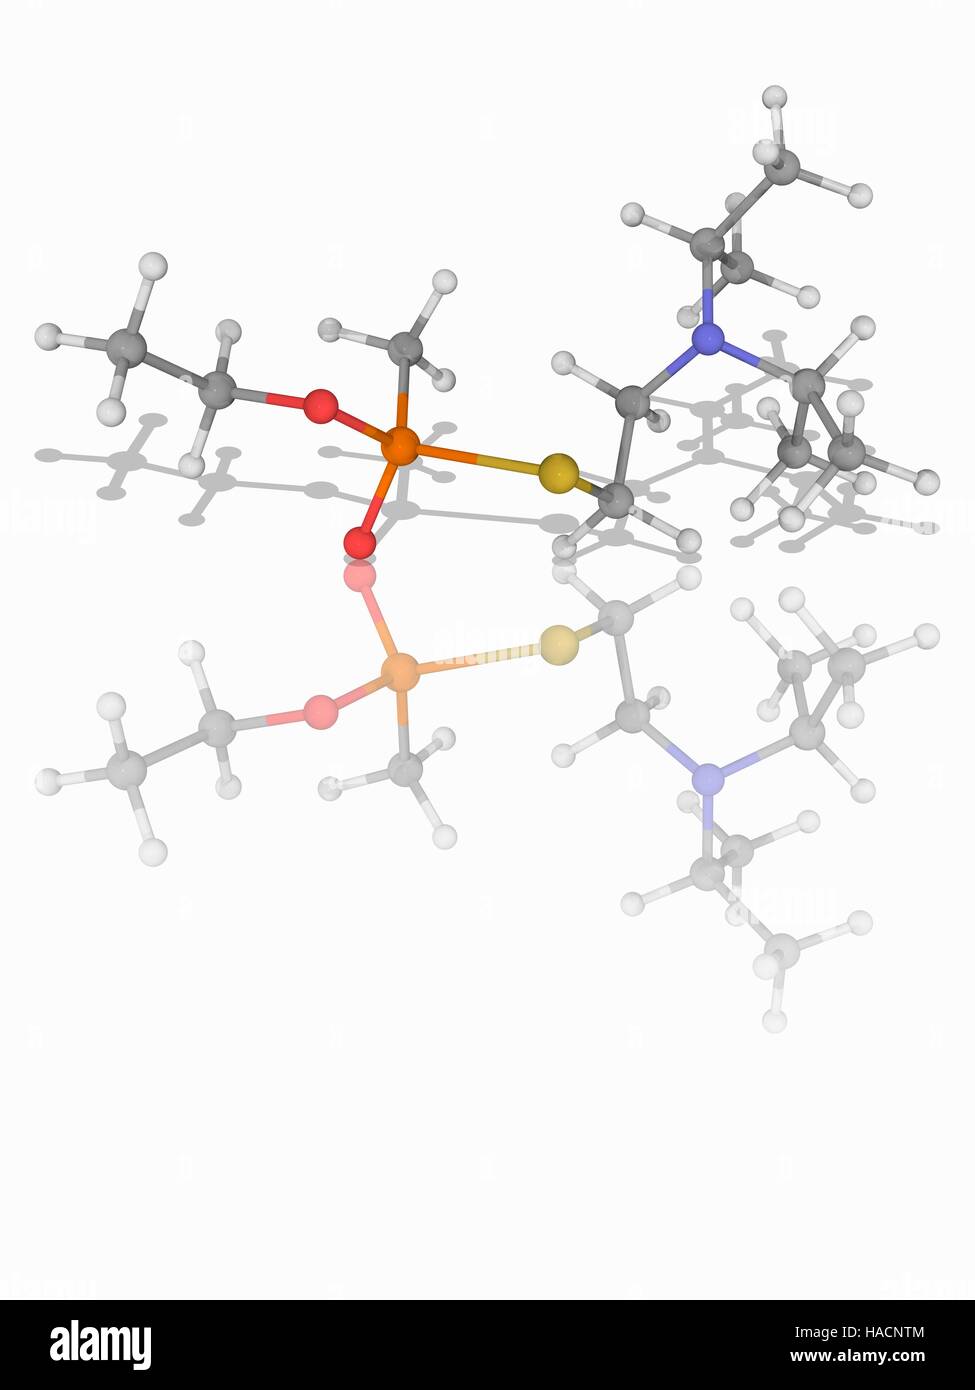 VX gas nervino. Il modello molecolare della estremamente tossico agente nervino VX (C11.H26.N.O2.P.S), usata come arma di distruzione di massa in guerra chimica. Gli atomi sono rappresentati da sfere e sono codificati a colori: carbonio (grigio), Idrogeno (bianco), Azoto (blu), Ossigeno (rosso), zolfo (giallo) e il fosforo (arancione). Illustrazione. Foto Stock